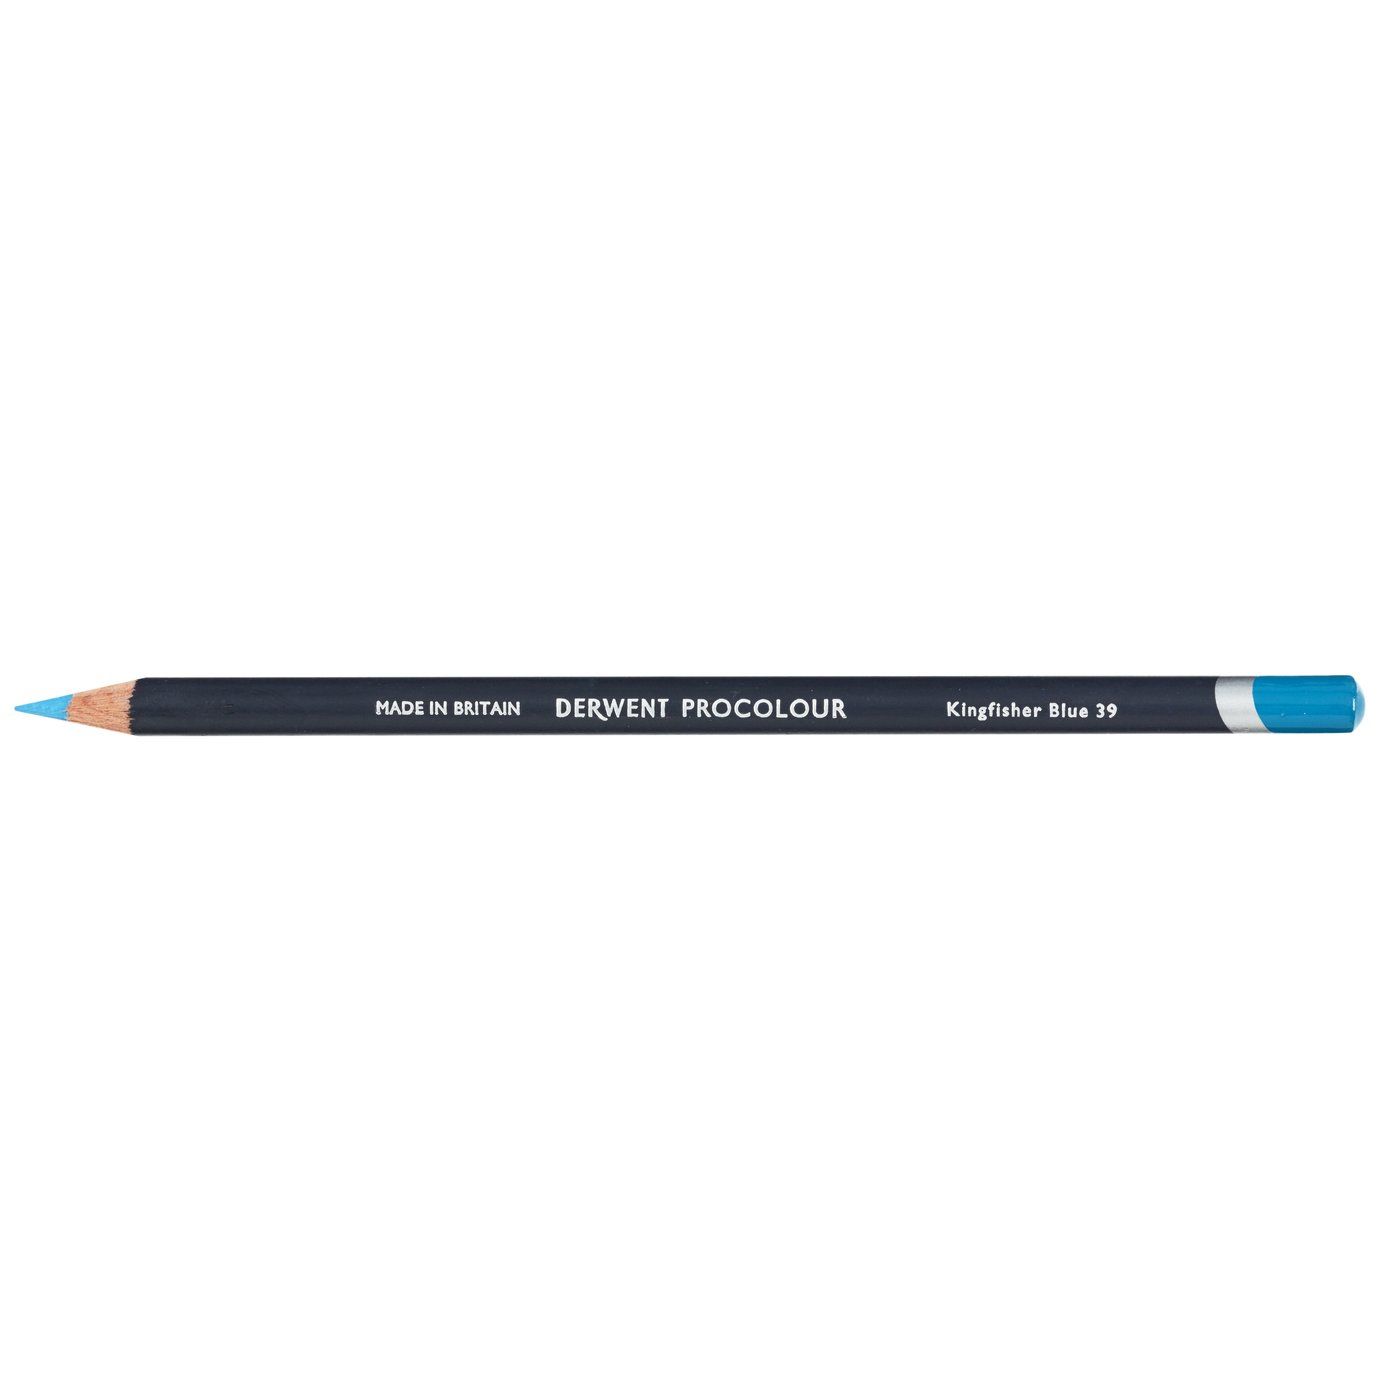 Derwent Procolour Pencil - 39 Kingfisher Blue